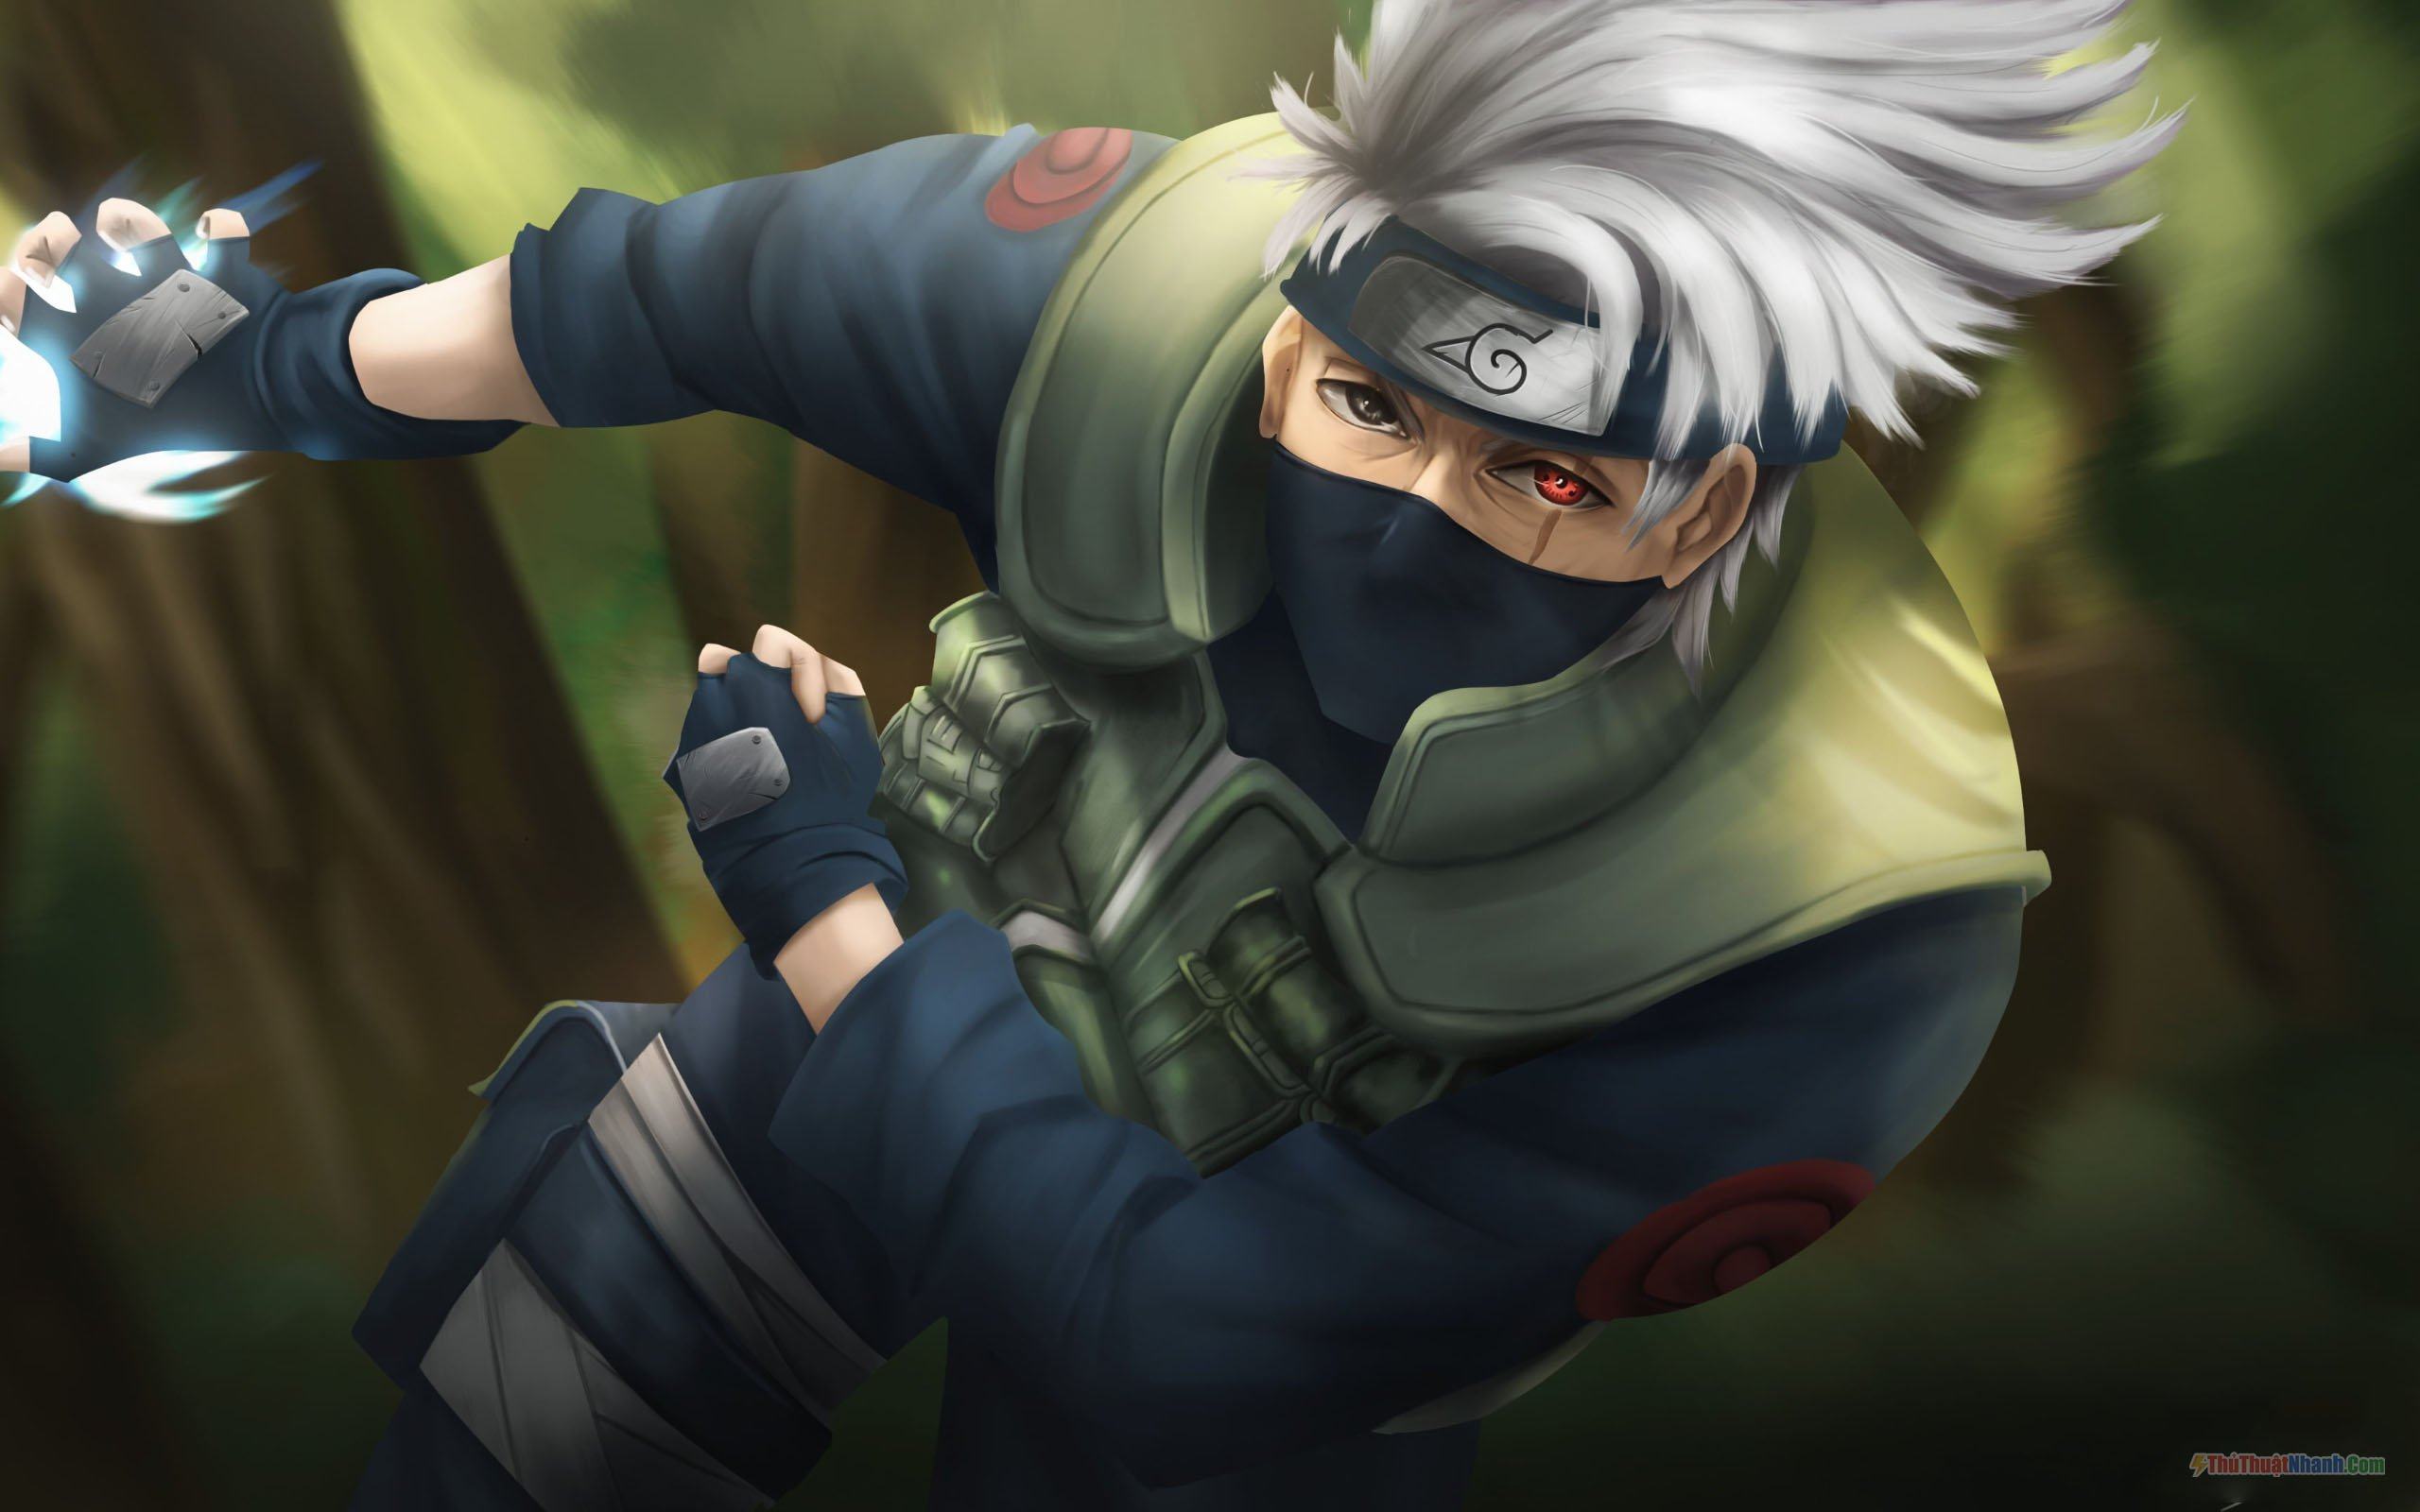 Ninja sao chép thần thái - một kĩ năng đặc biệt của Kakashi Hatake, một ninja Elite của làng lá. Hãy cùng ngắm nhìn hình ảnh của Kakashi Hatake trong trang phục ninja và chiêm ngưỡng sức mạnh và nghị lực phi thường của một siêu nhân vô cùng đặc biệt!